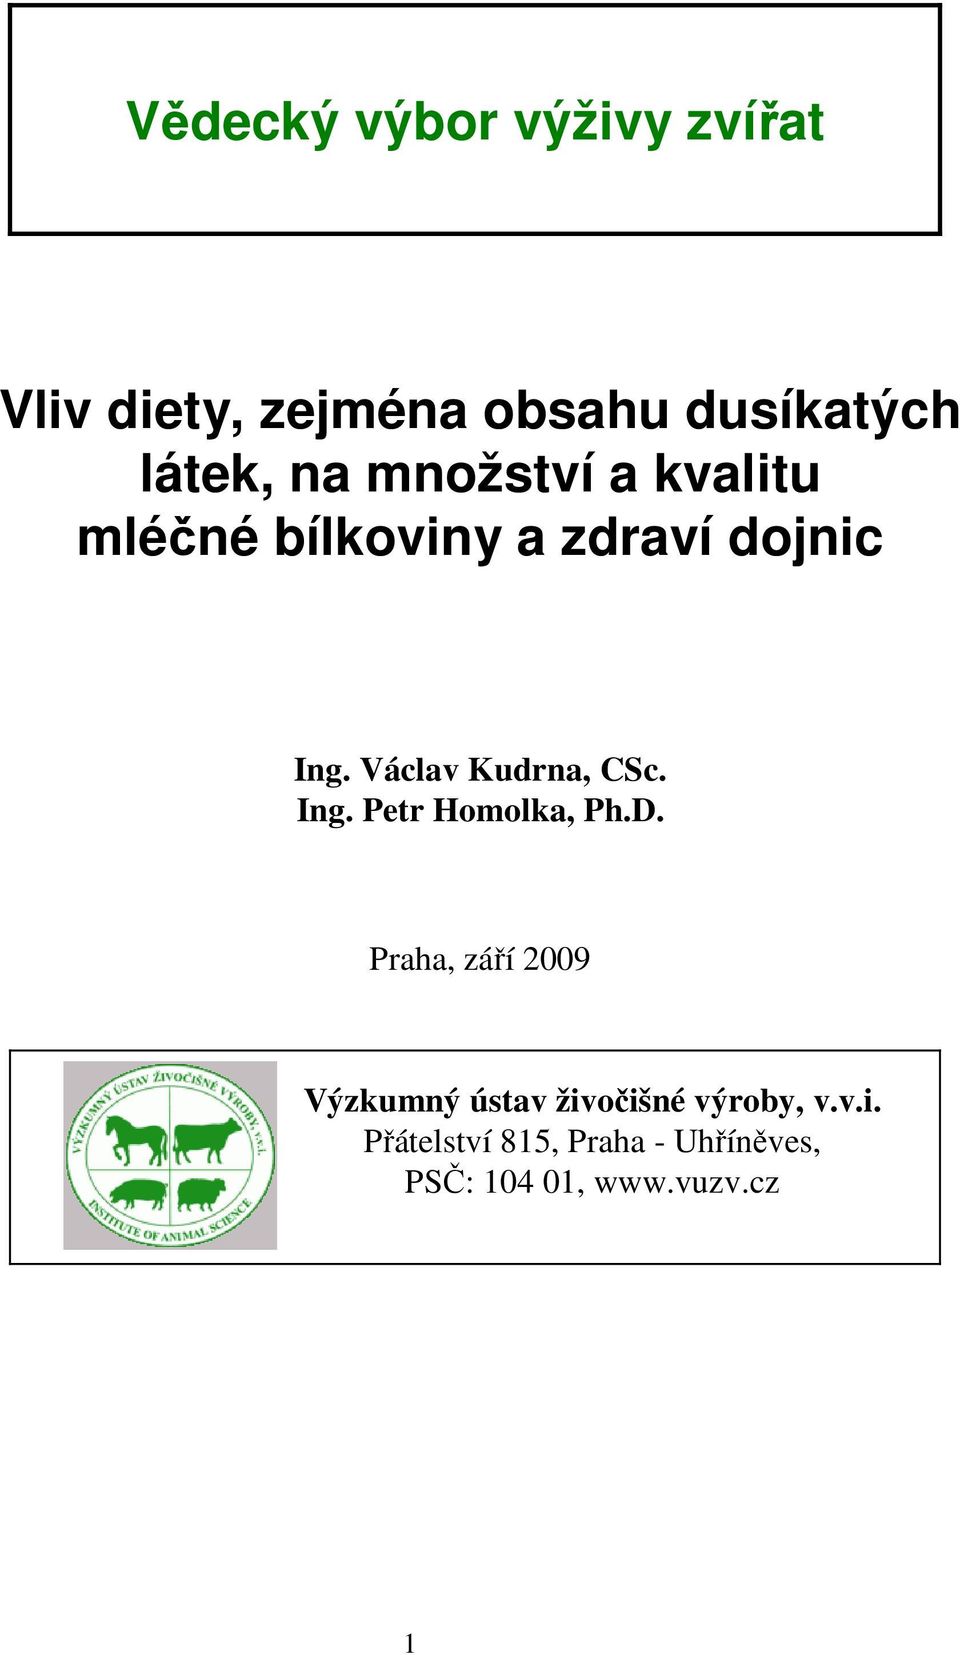 Václav Kudrna, CSc. Ing. Petr Homolka, Ph.D.